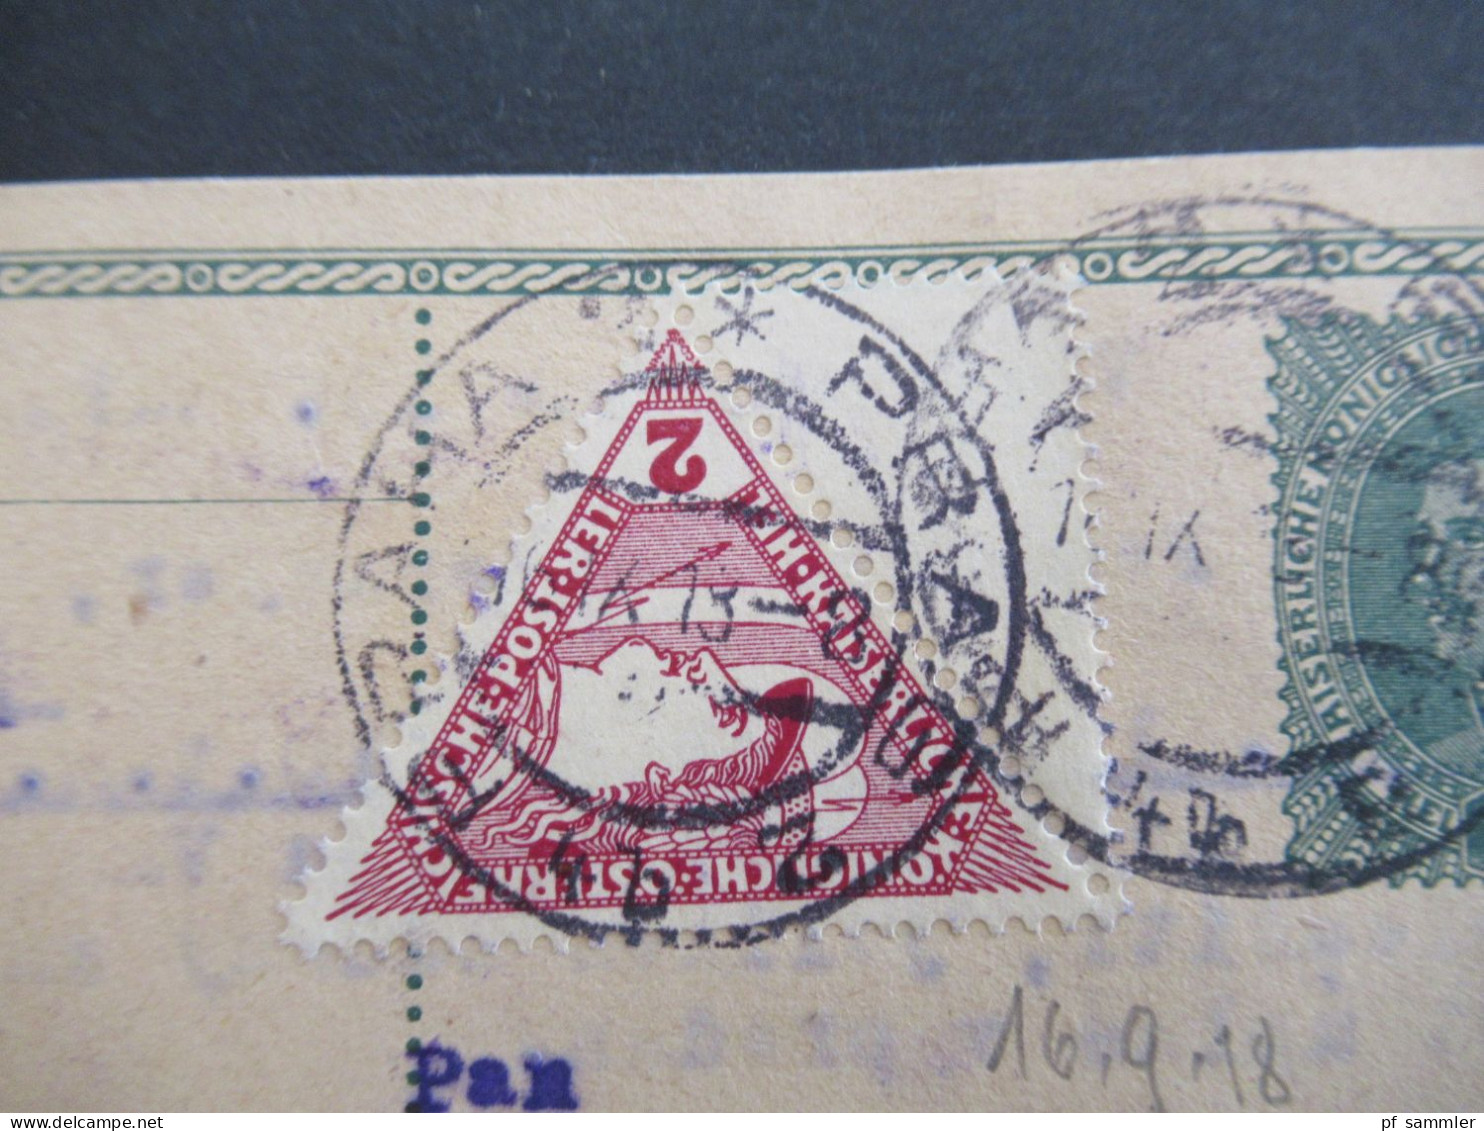 Österreich 1916 / 18 Ganzsache 8 Heller Mit Zusatzfrankatur Drucksachen Eilmarke Mi.Nr.217 Mit 1/2 Leerfeld Prag - Kiew - Postkarten